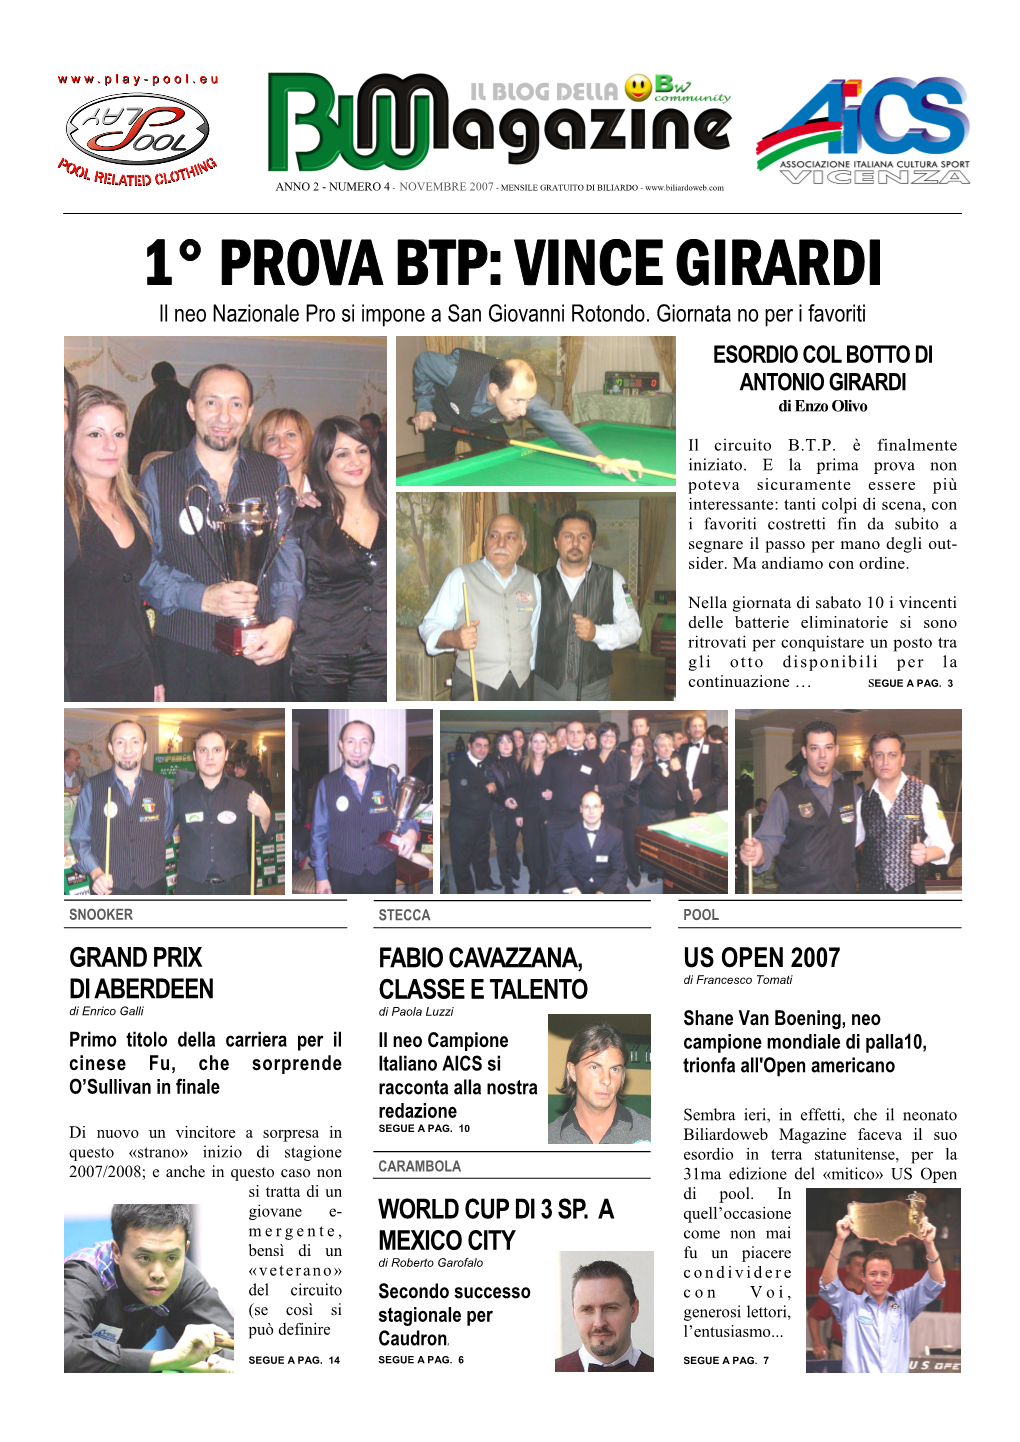 1° PROVA BTP: VINCE GIRARDI Il Neo Nazionale Pro Si Impone a San Giovanni Rotondo